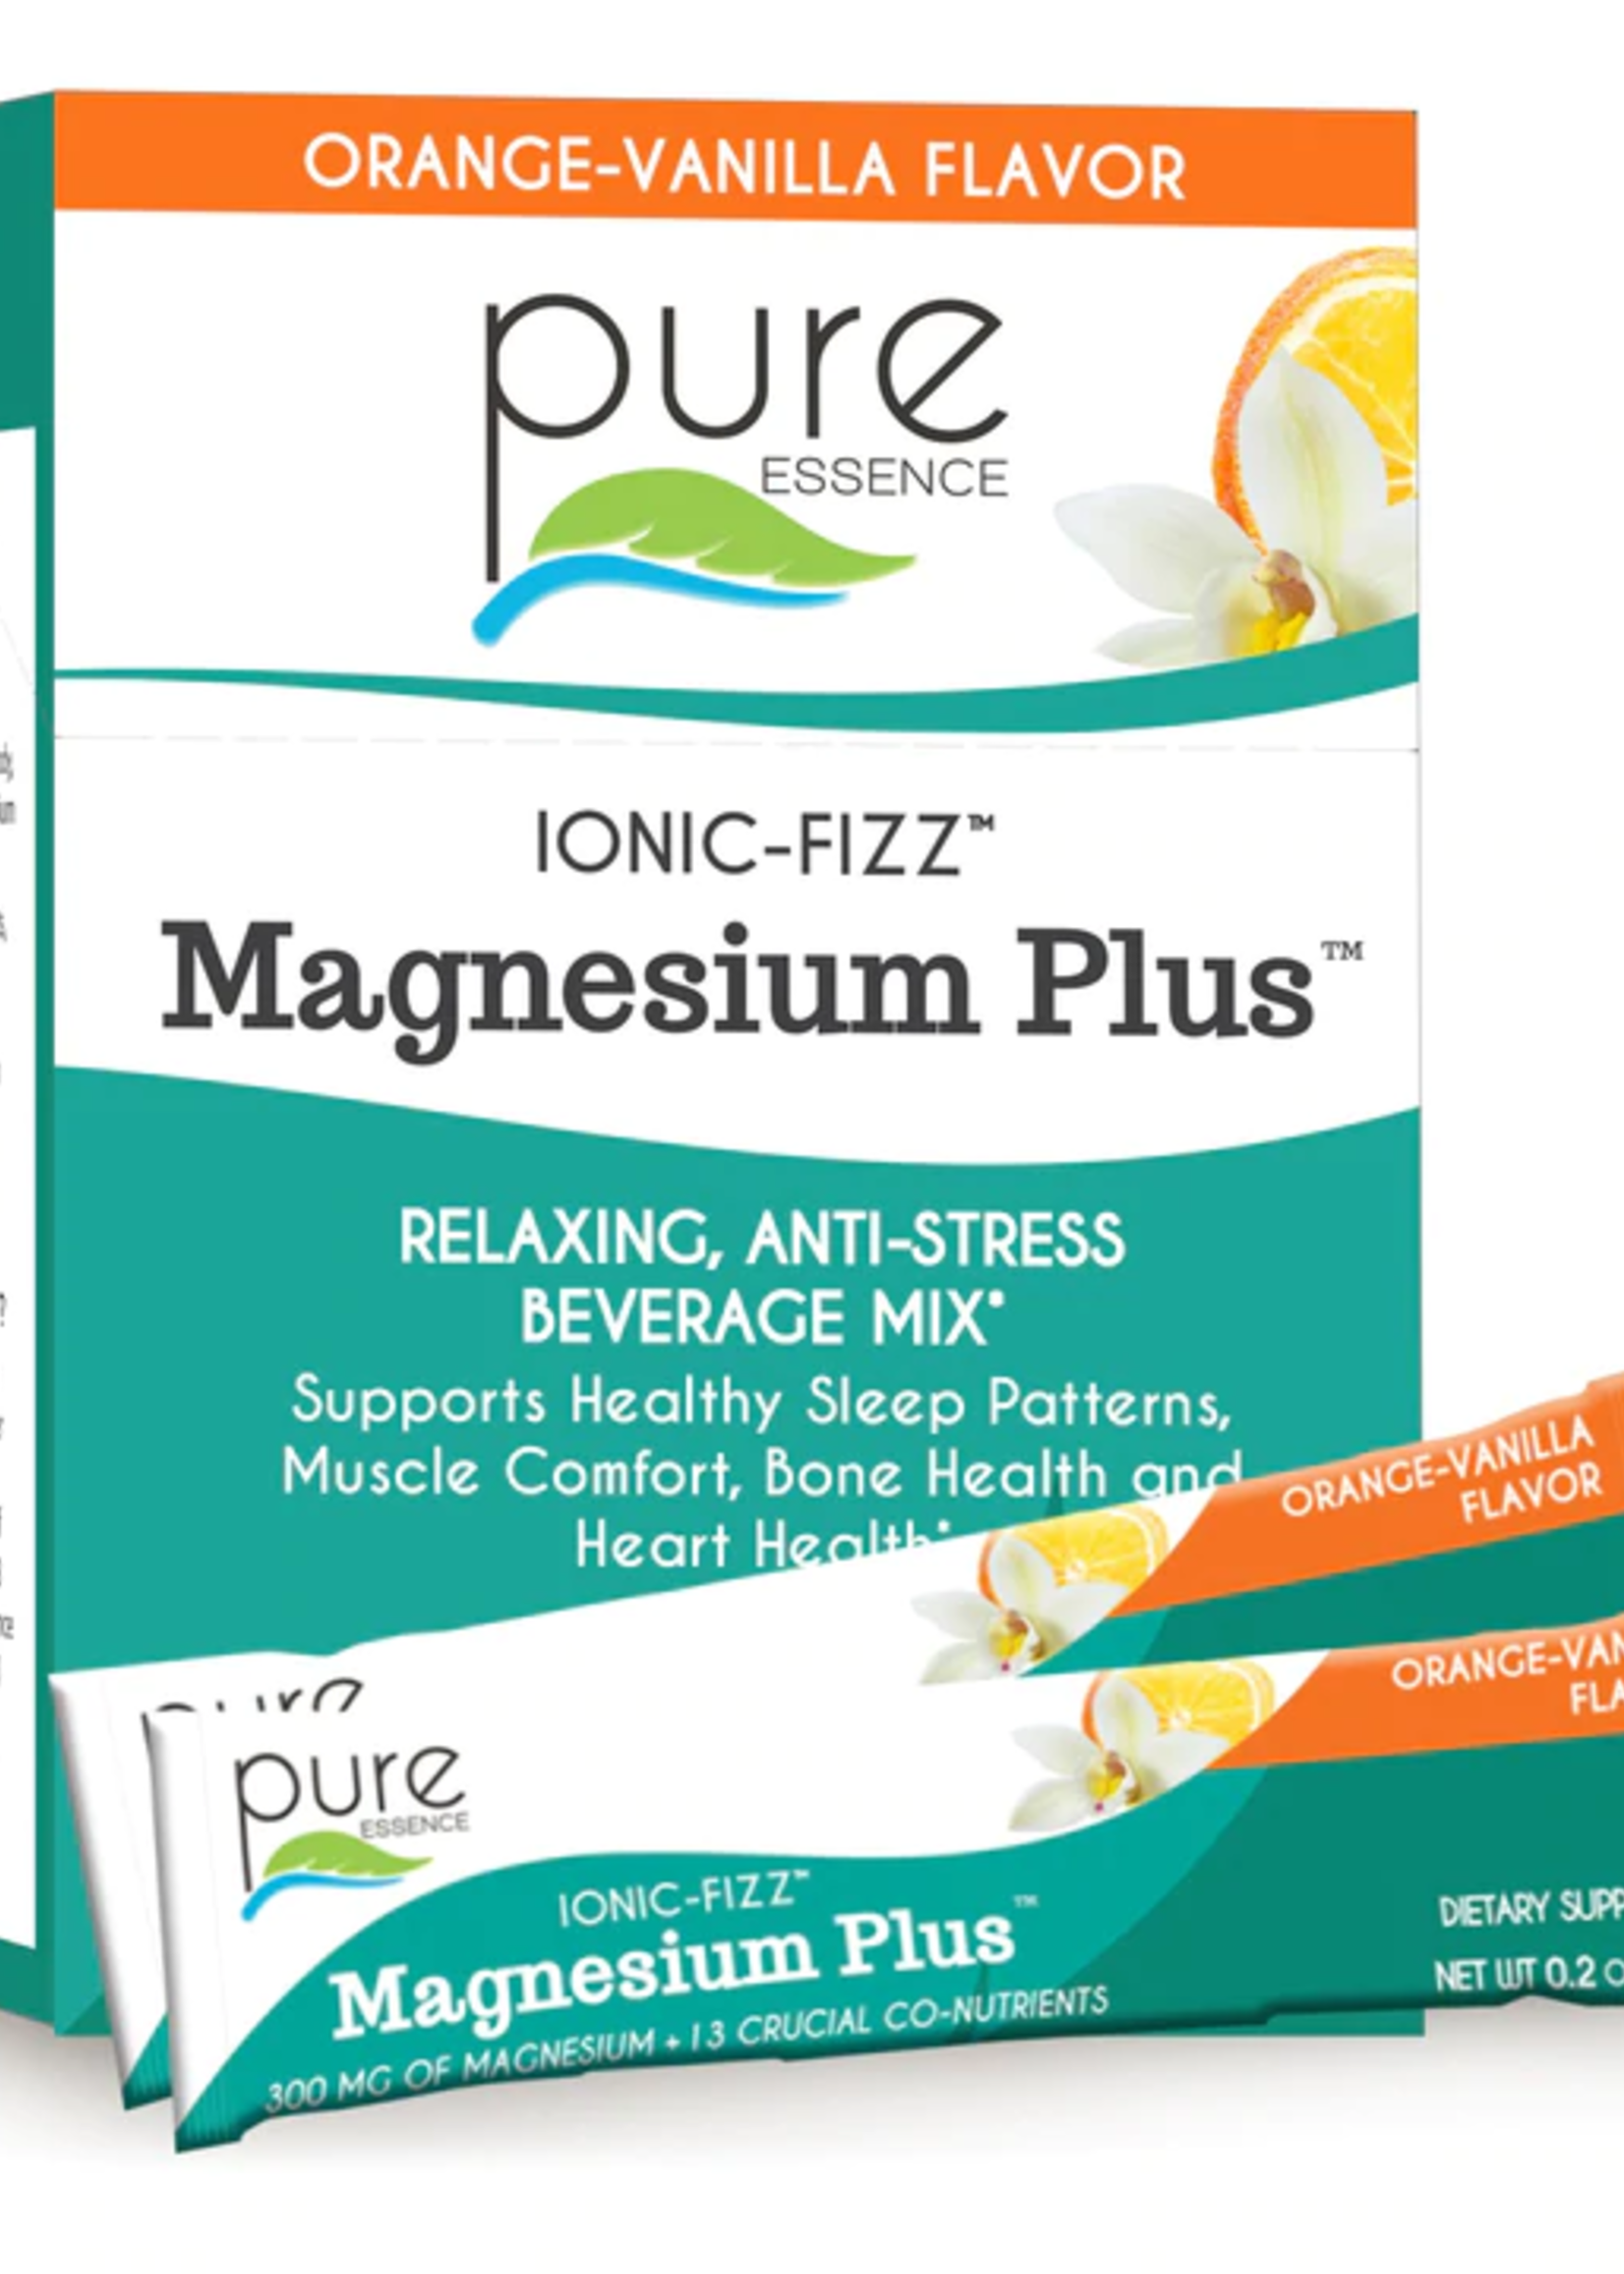 Pure Essence Ionic-Fizz Magnesium Plus Orange & Vanilla 30ct Box